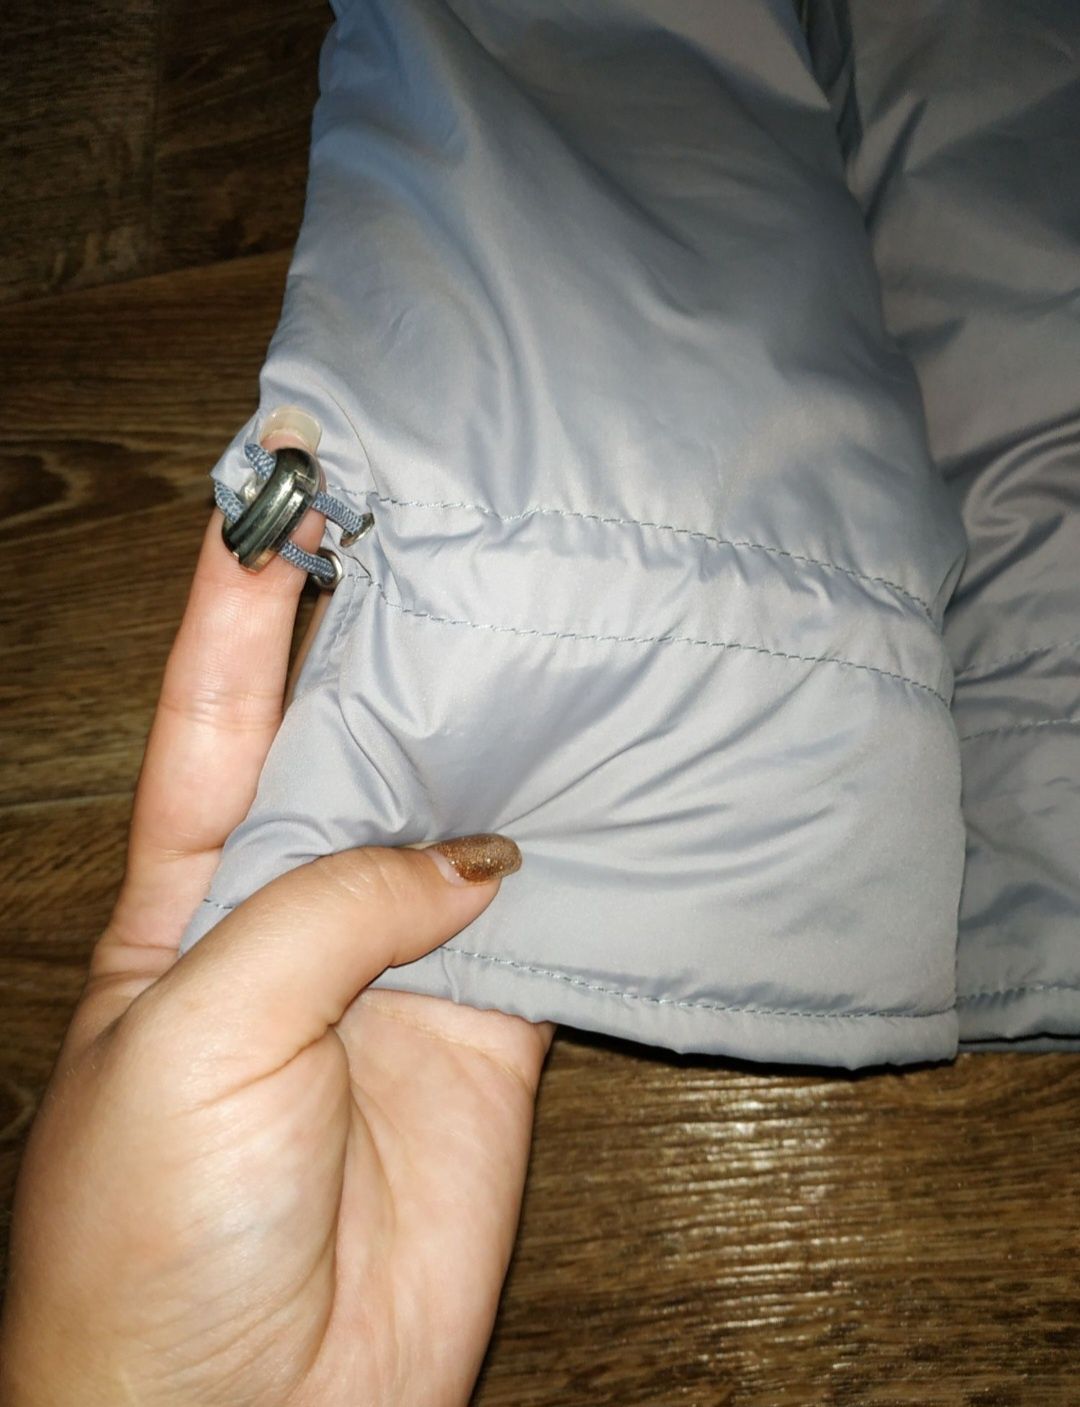 Зимовий комбінезон напівкомбінезон куртка курточка у розмірі 98 см